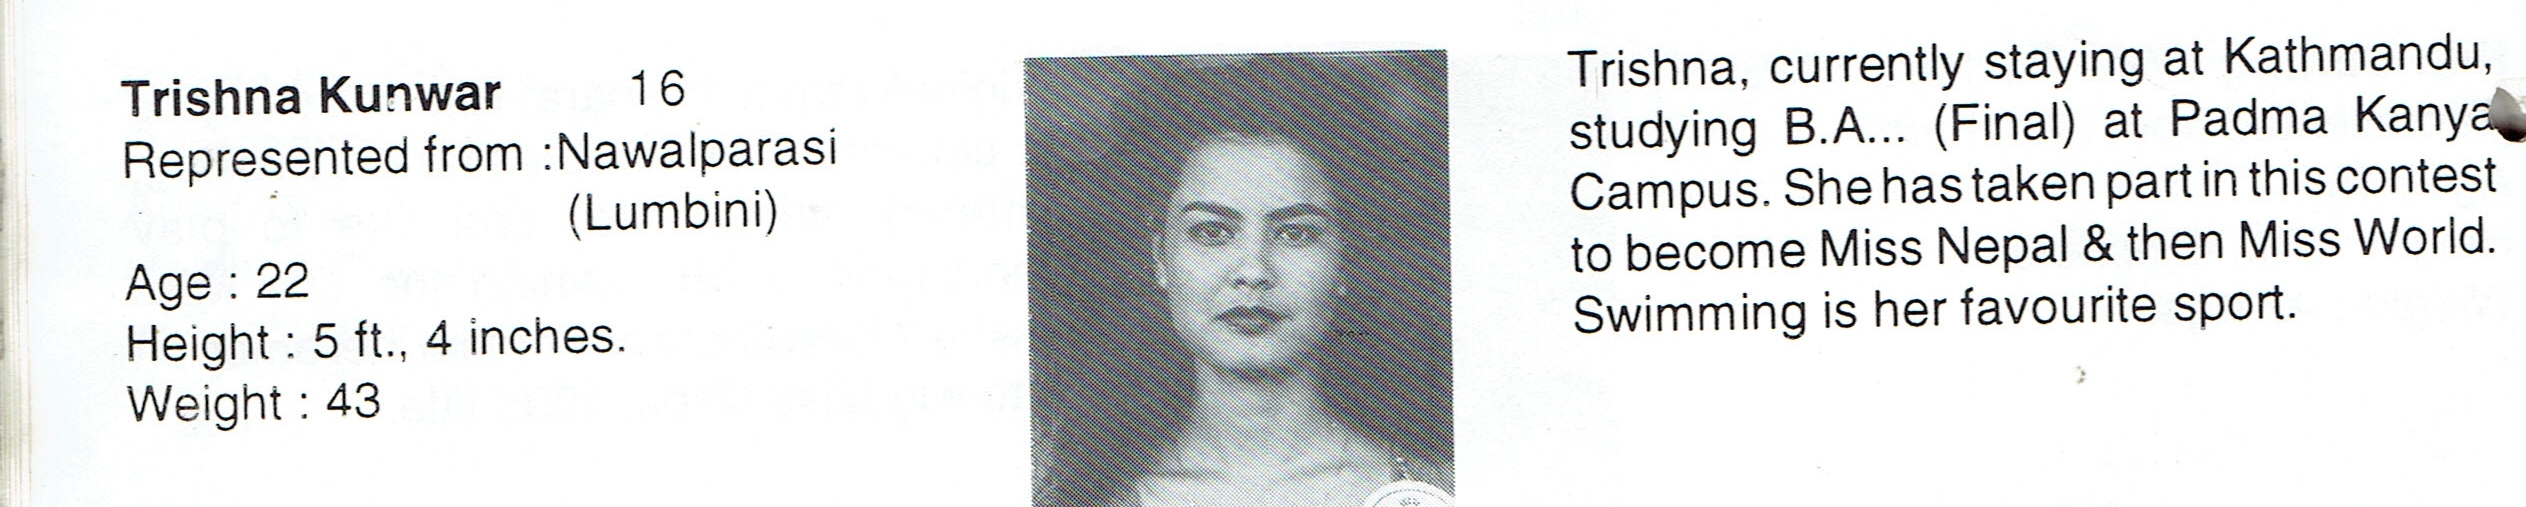 Trishna Kunwar